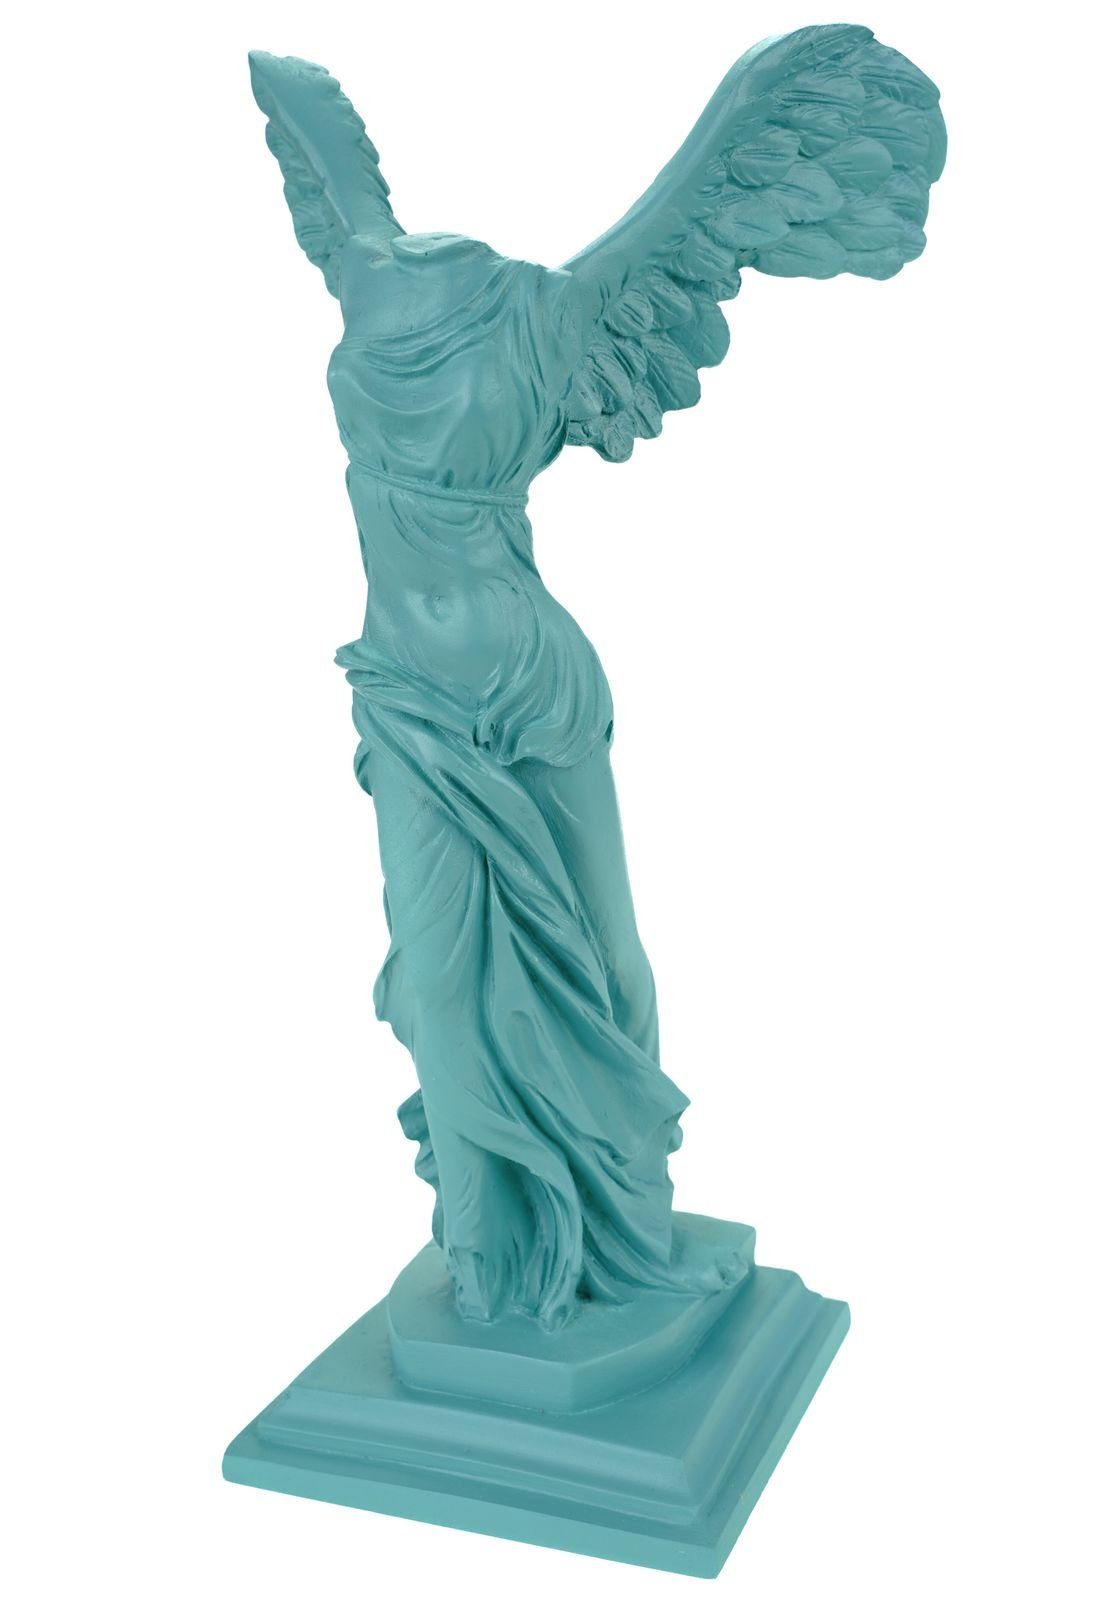 Kremers Schatzkiste Dekofigur Alabaster Nike Siegesgöttin von Samothrake Figur Skulptur 29 cm Türkis Siegesdenkmal